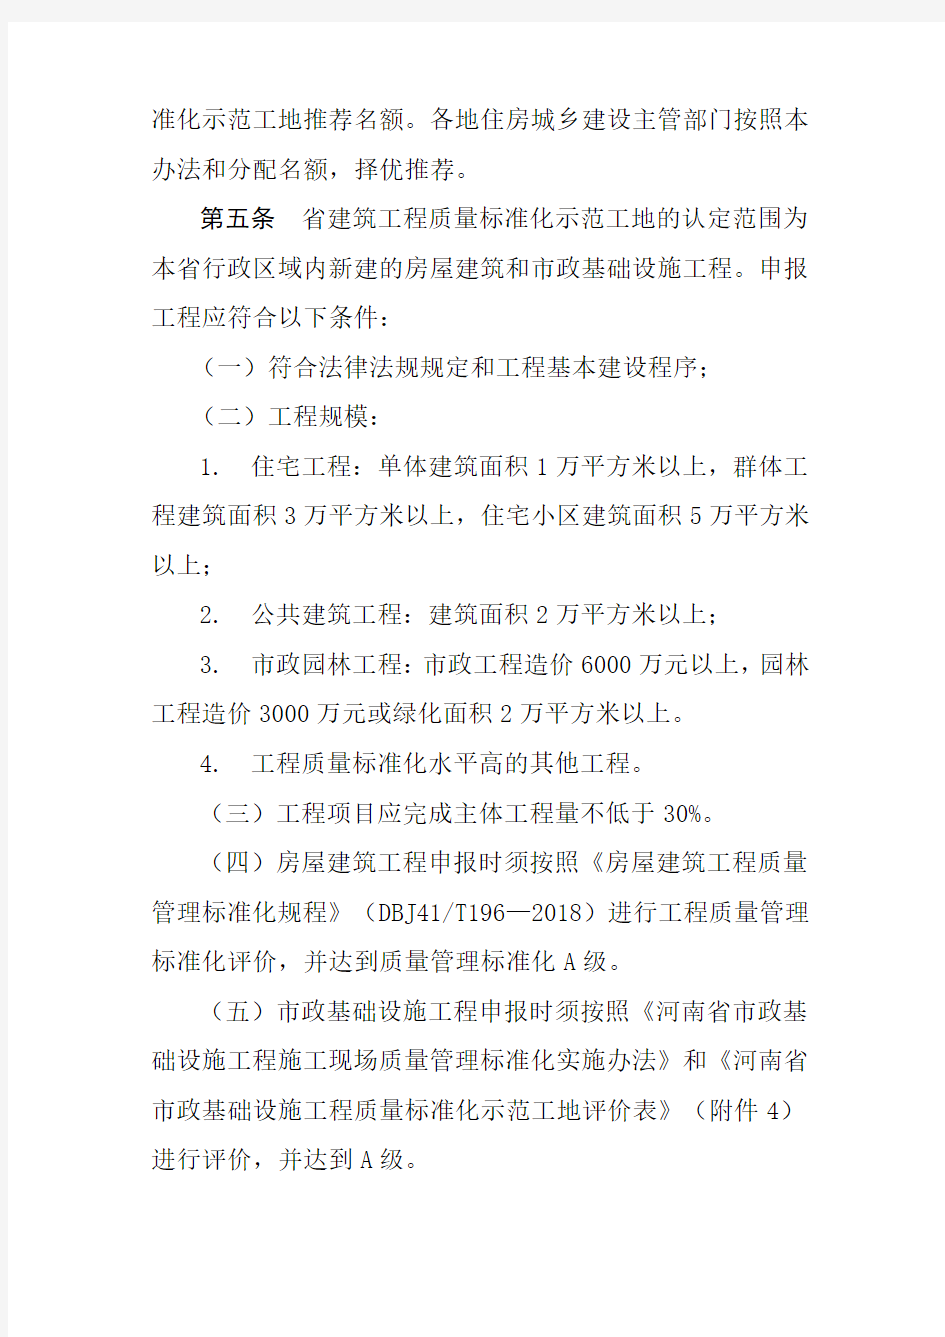 河南省建筑工程质量标准化示范工地管理办法